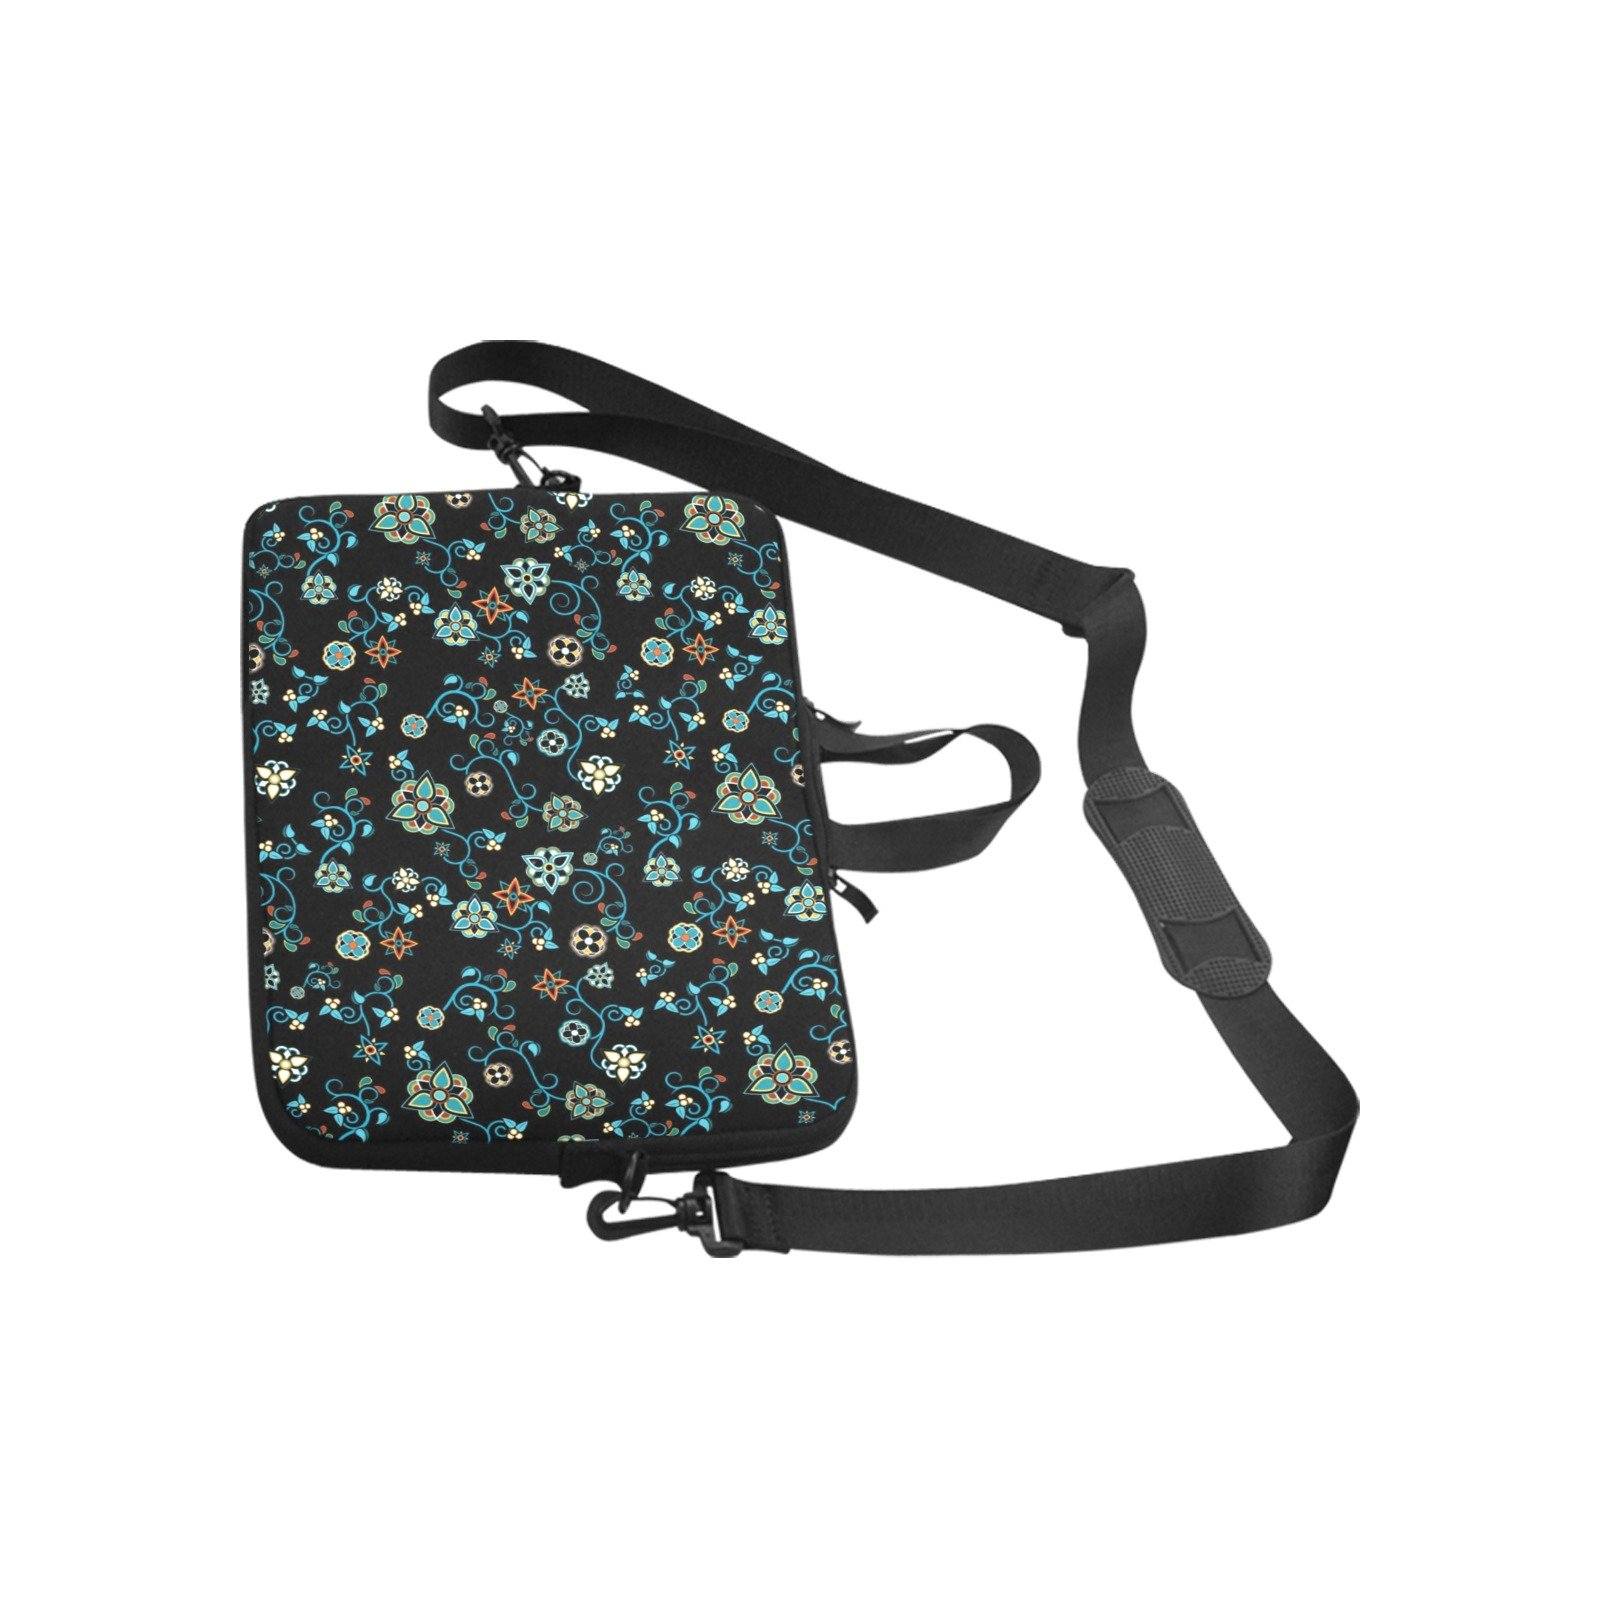 Ocean Bloom Laptop Handbags 17" bag e-joyer 